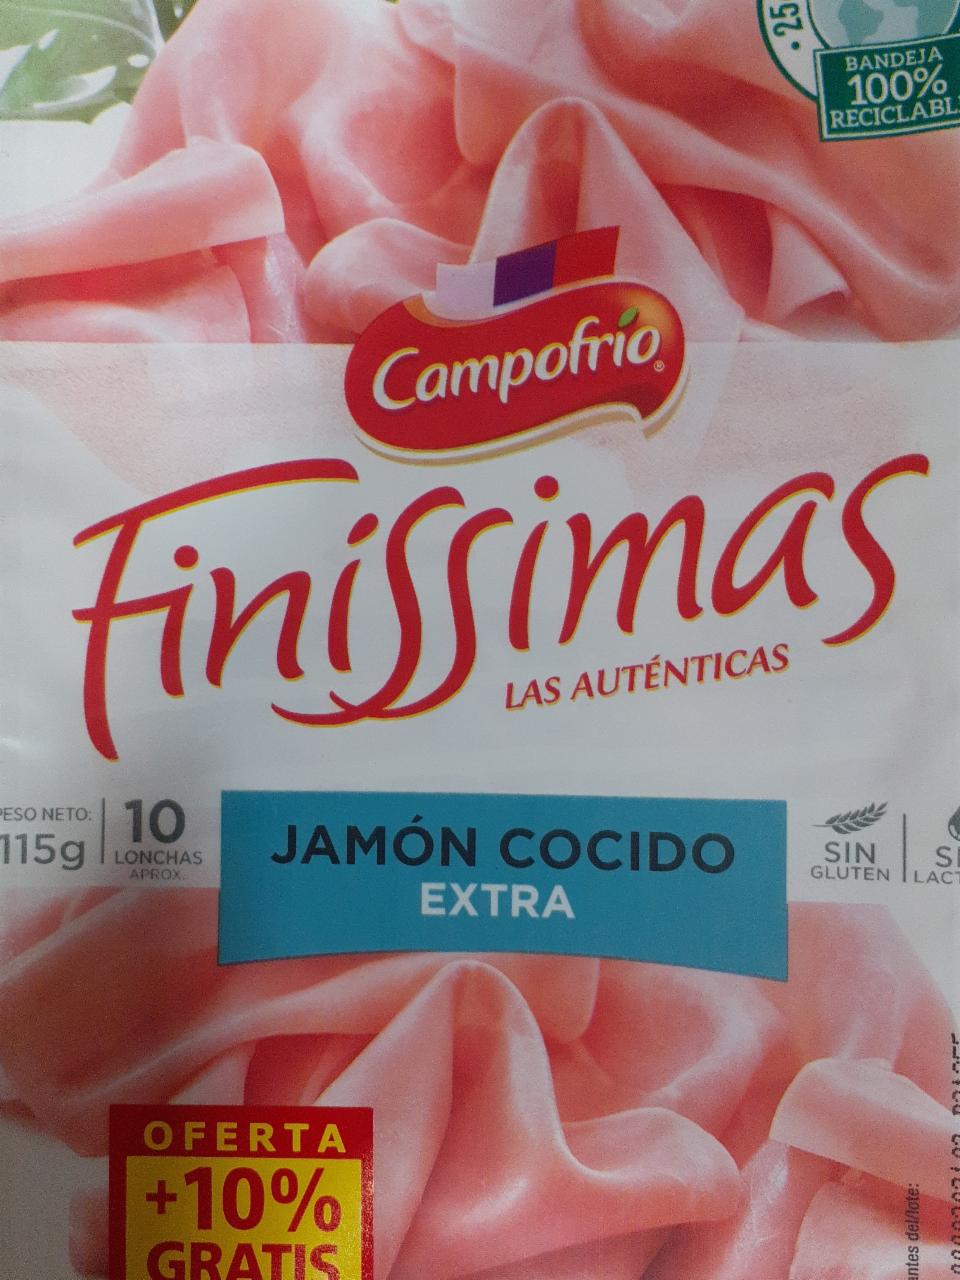 Fotografie - Finissimas Jamón cocido extra Campofrío